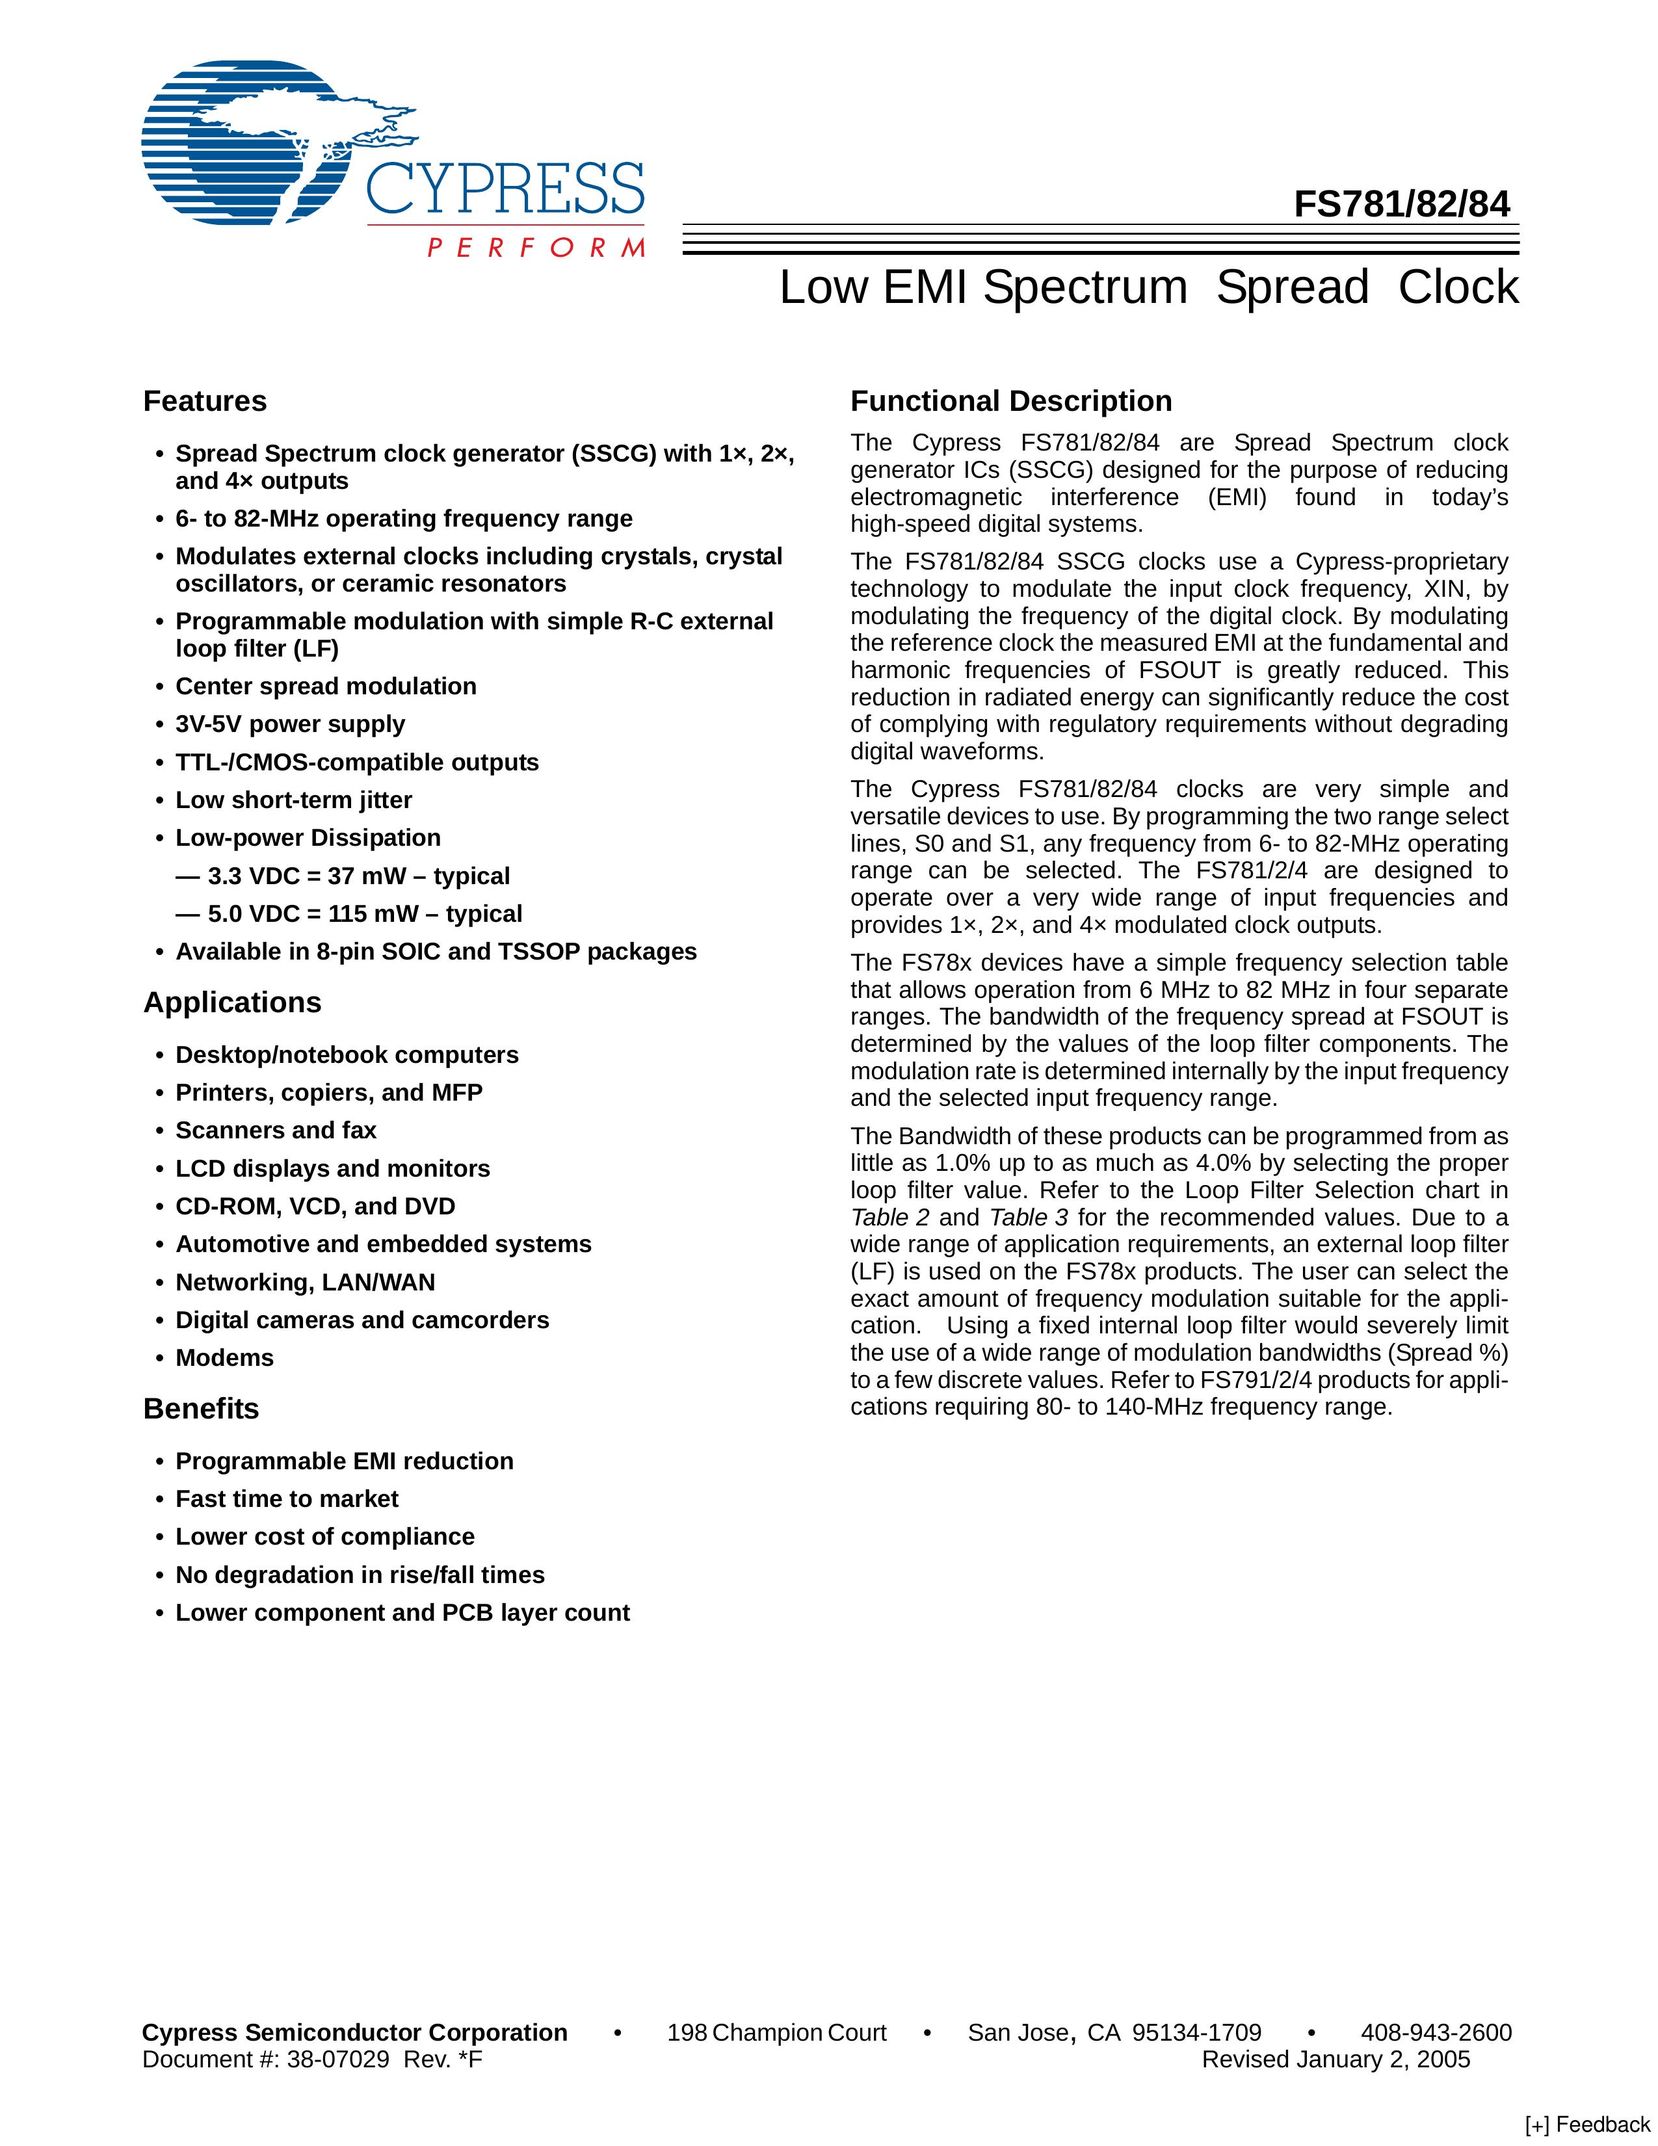 Cypress FS784 Clock User Manual